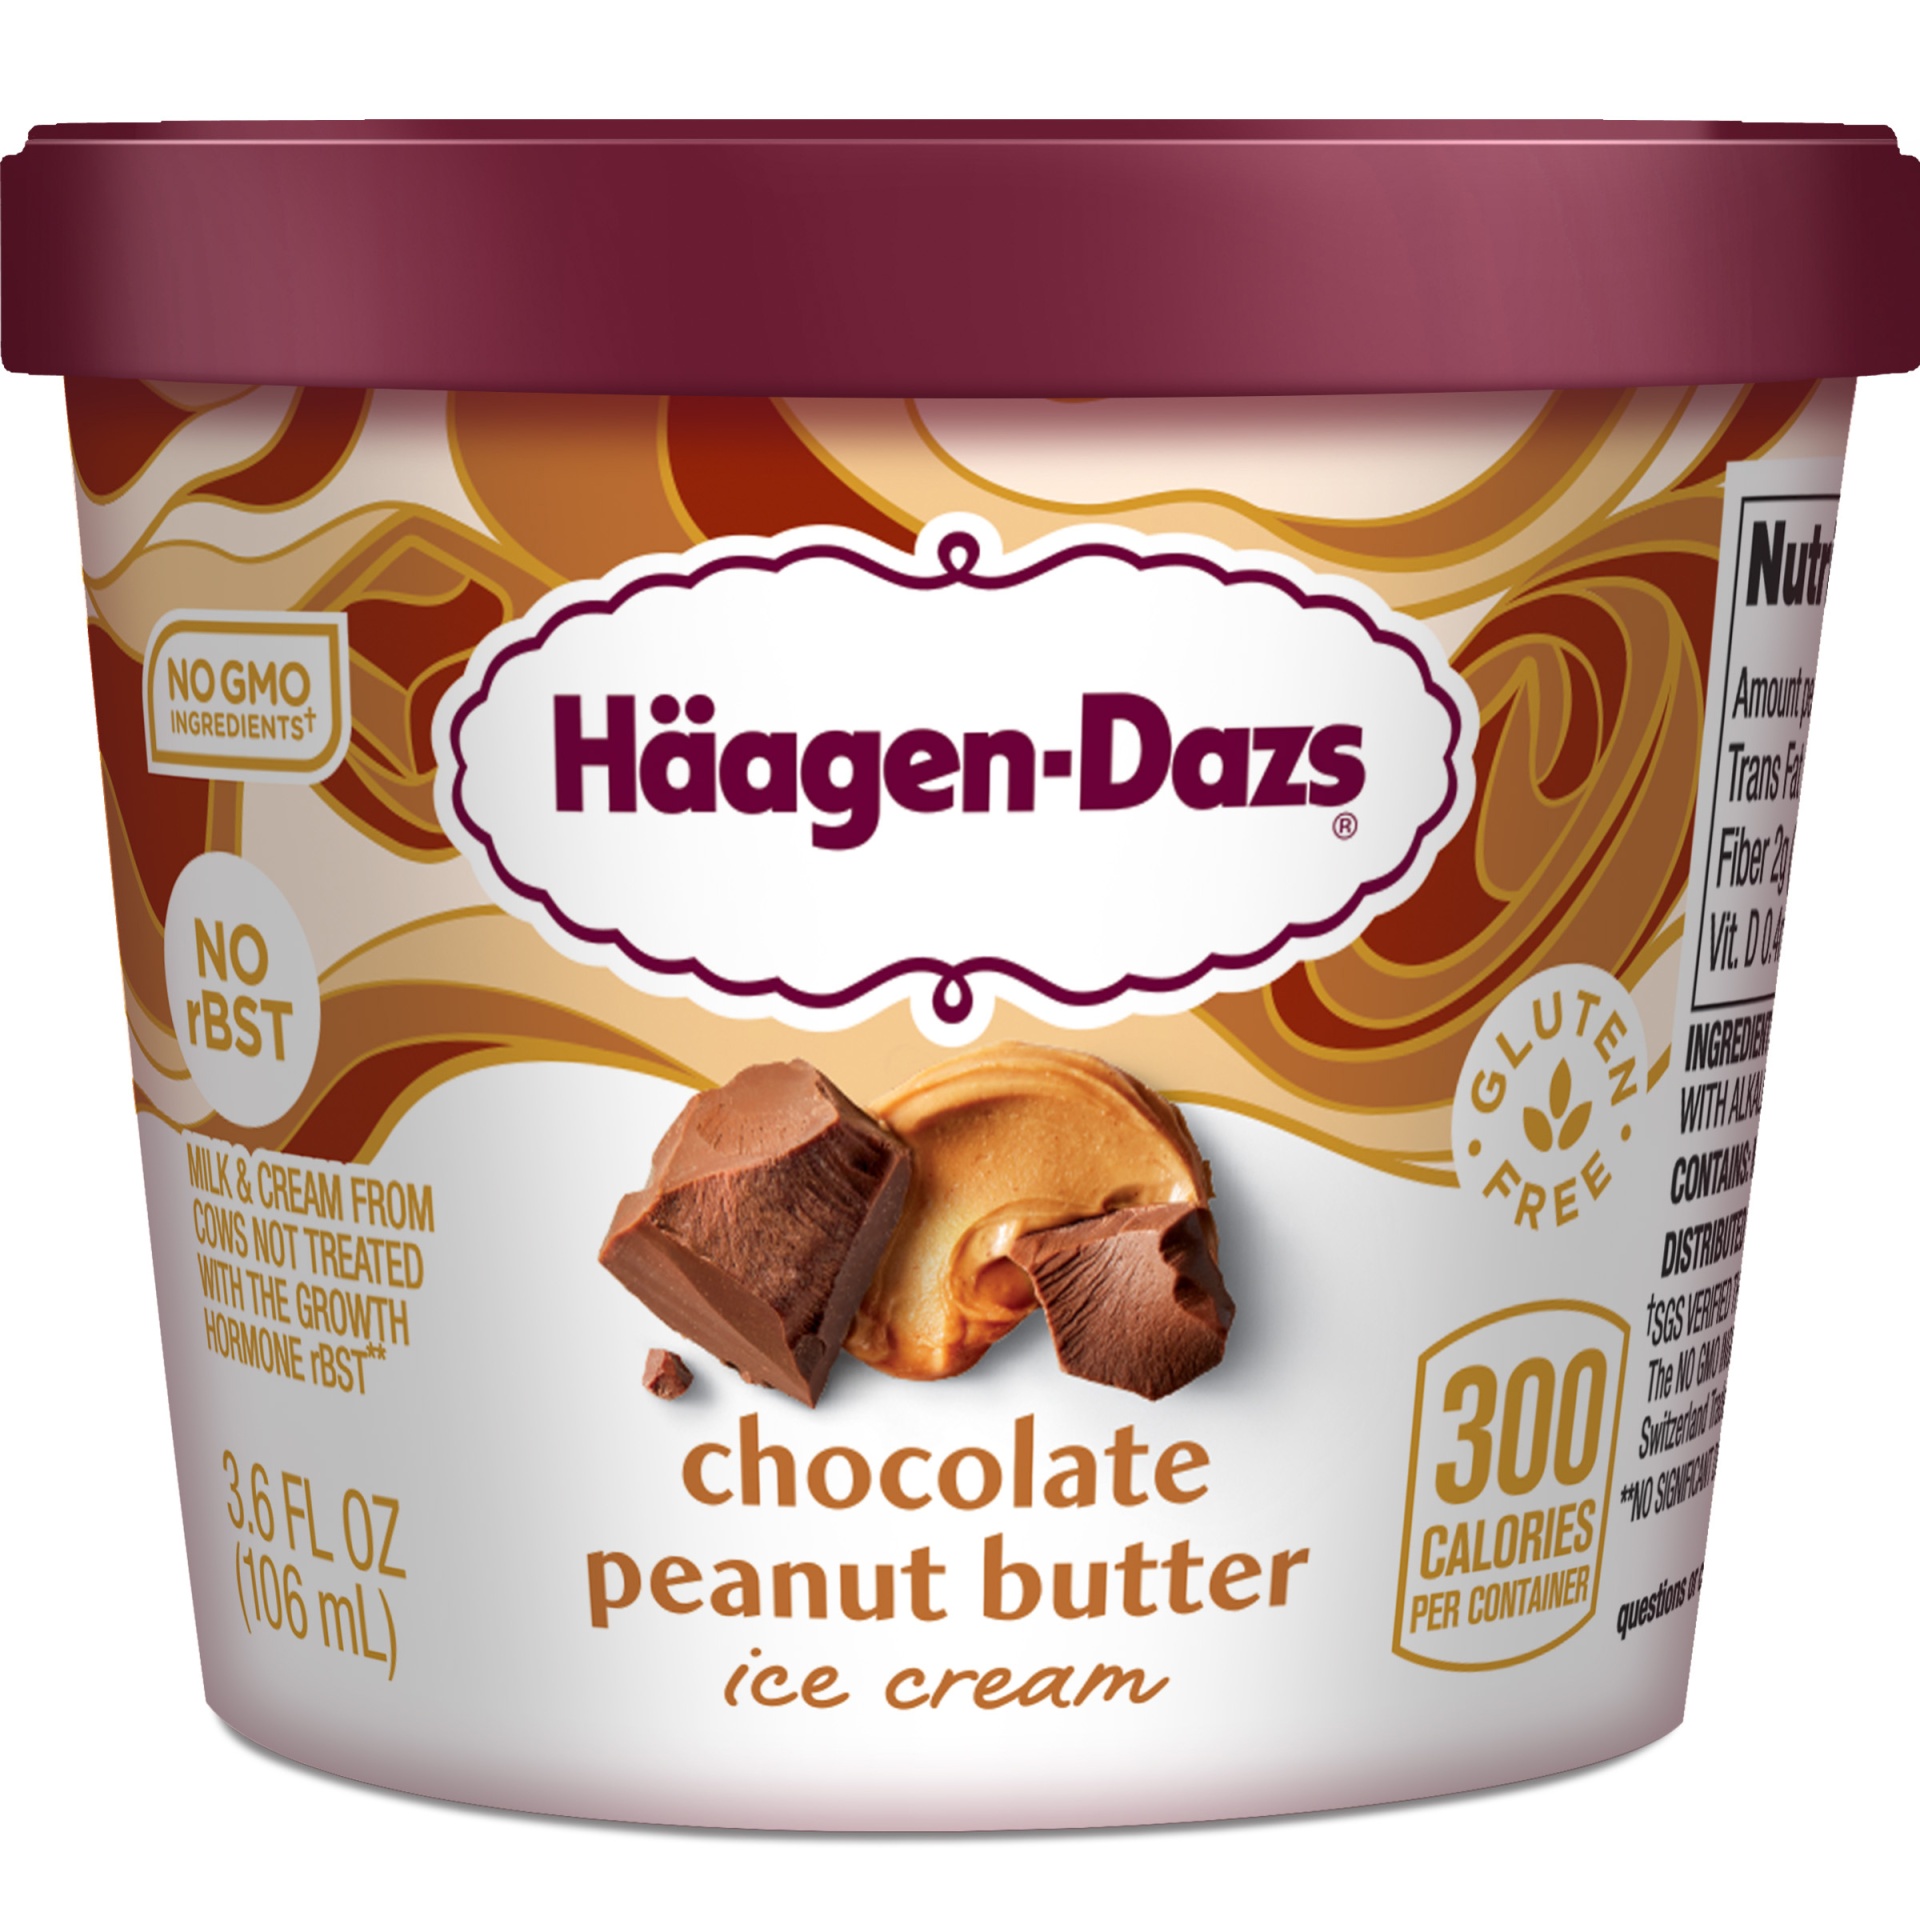 slide 1 of 1, Häagen-Dazs Haagen-Dazs Chocolate Peanut Butter Ice Cream, 3.6 fl oz